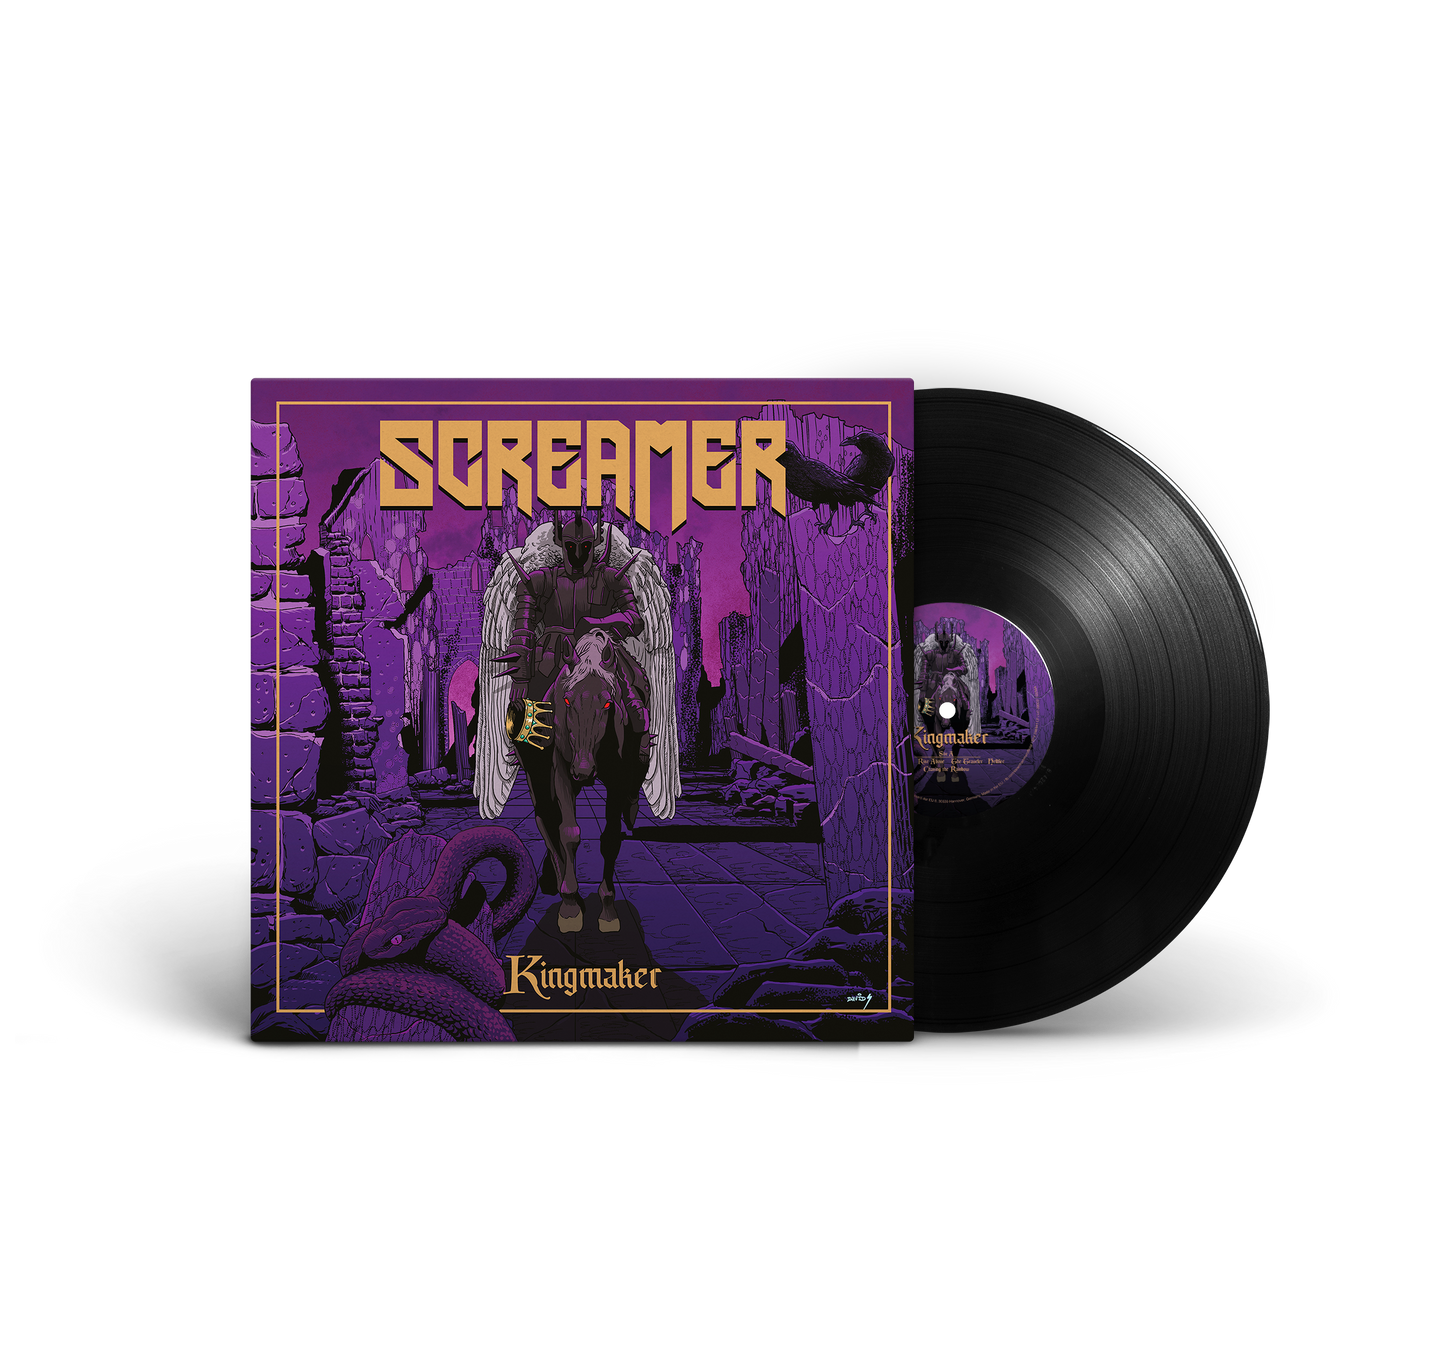 Screamer "Kingmaker" LP